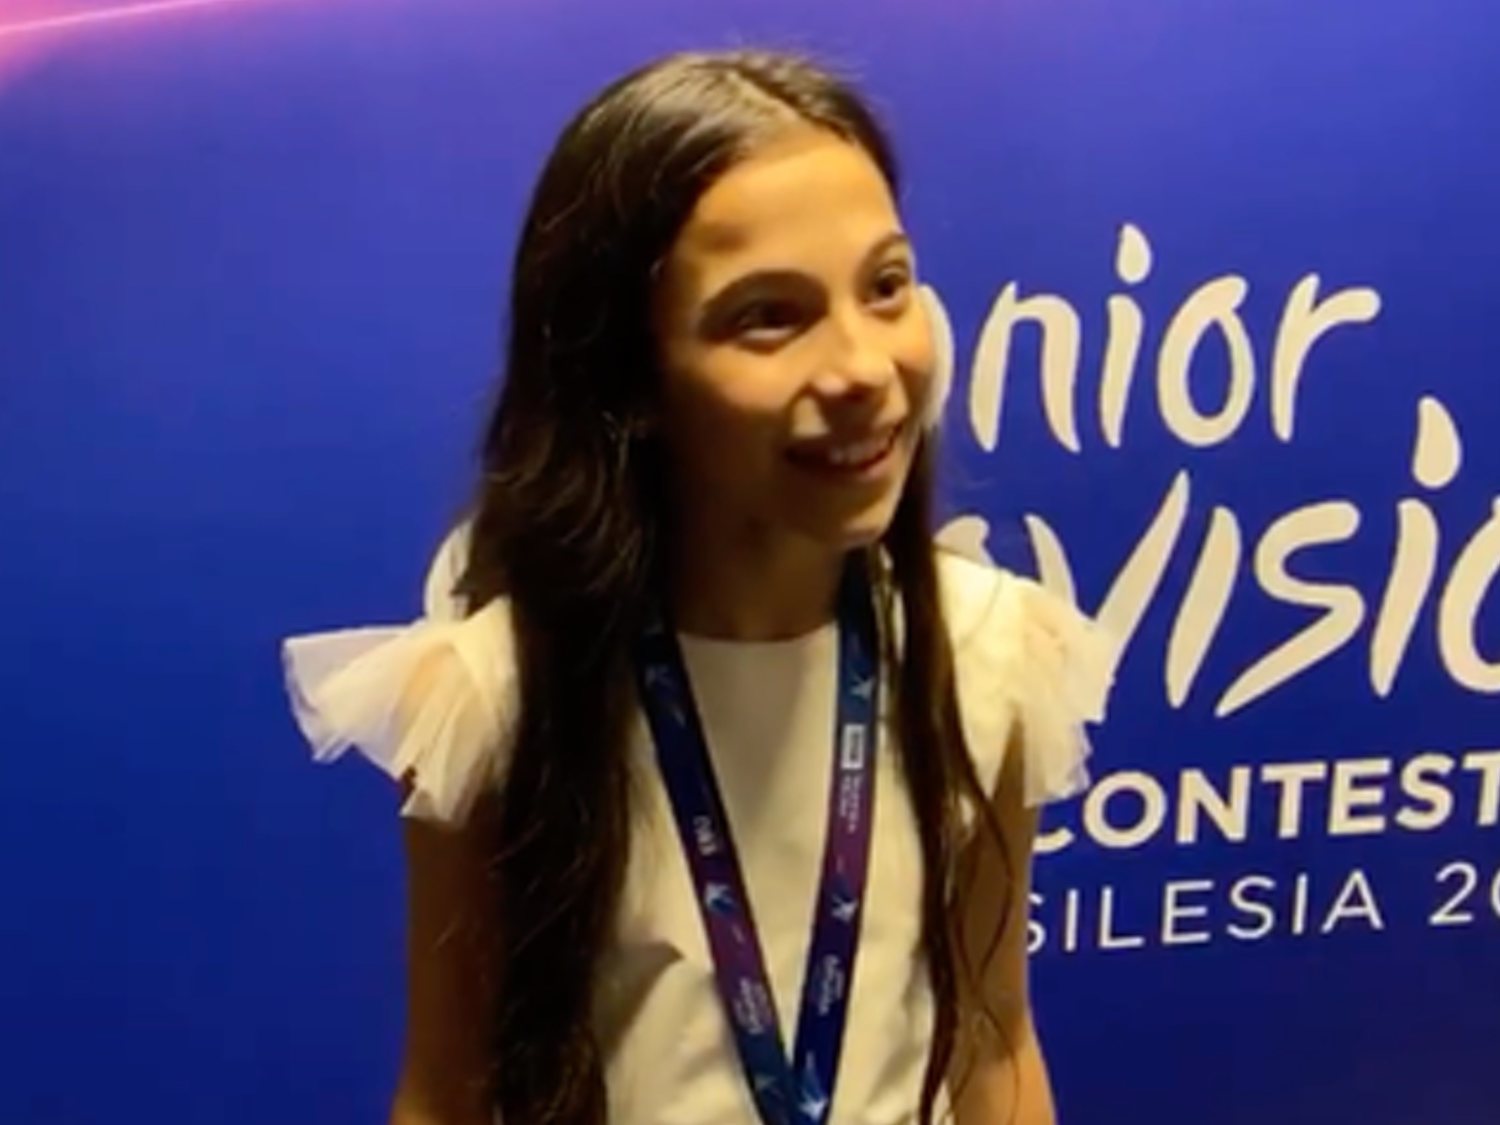 Así se ha pronunciado Melani tras la final de Eurovisión Junior: "He conseguido difundir mi mensaje"